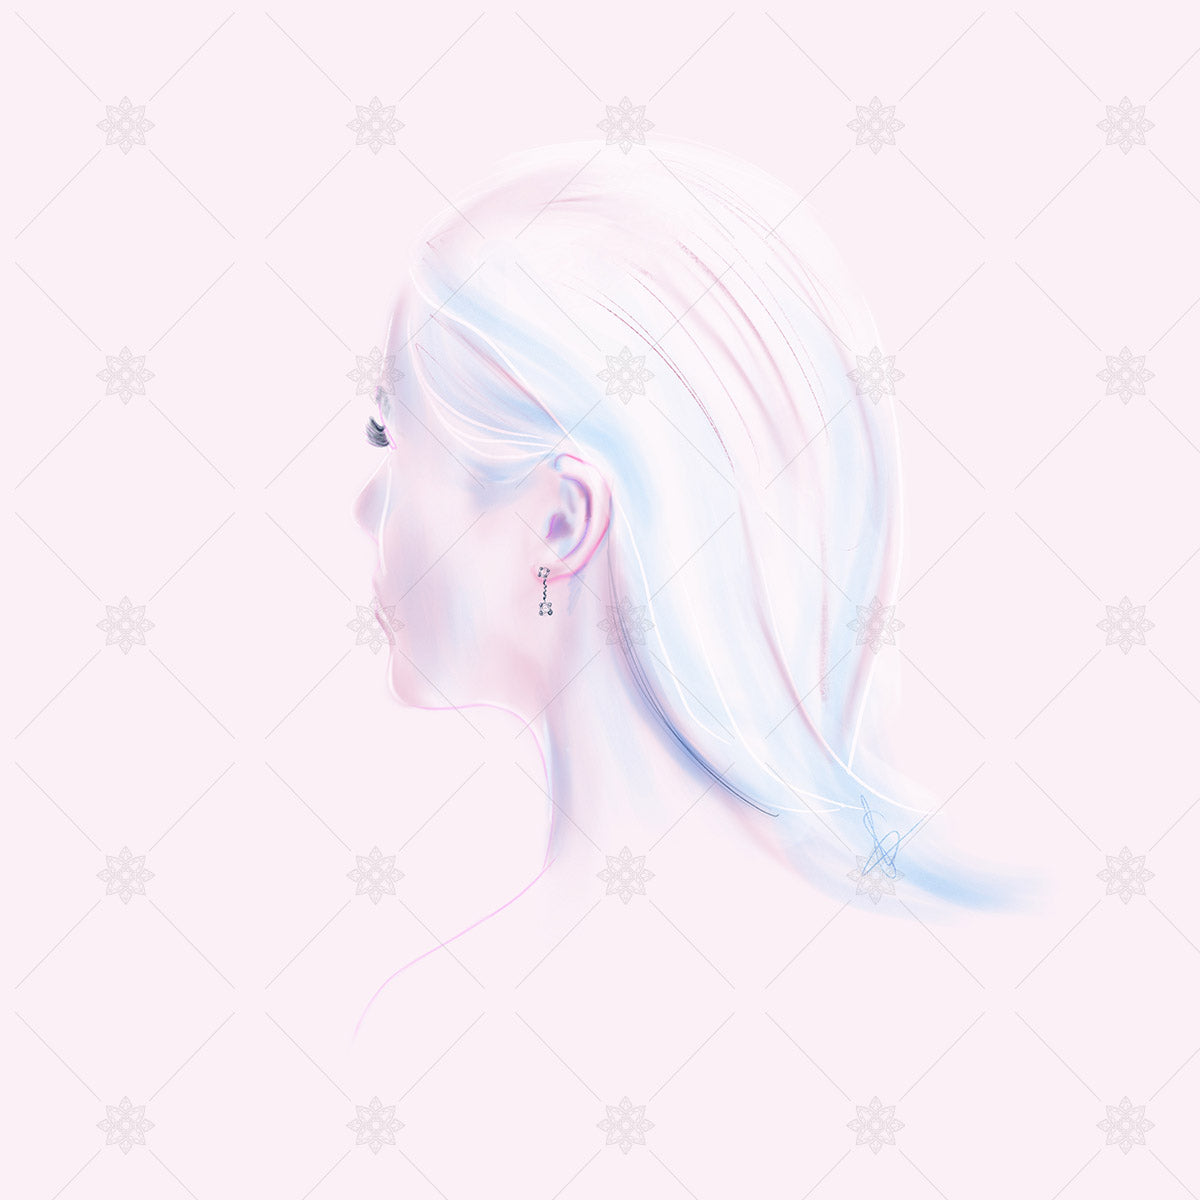 Art sketch of a woman wearing diamond earrings on pink